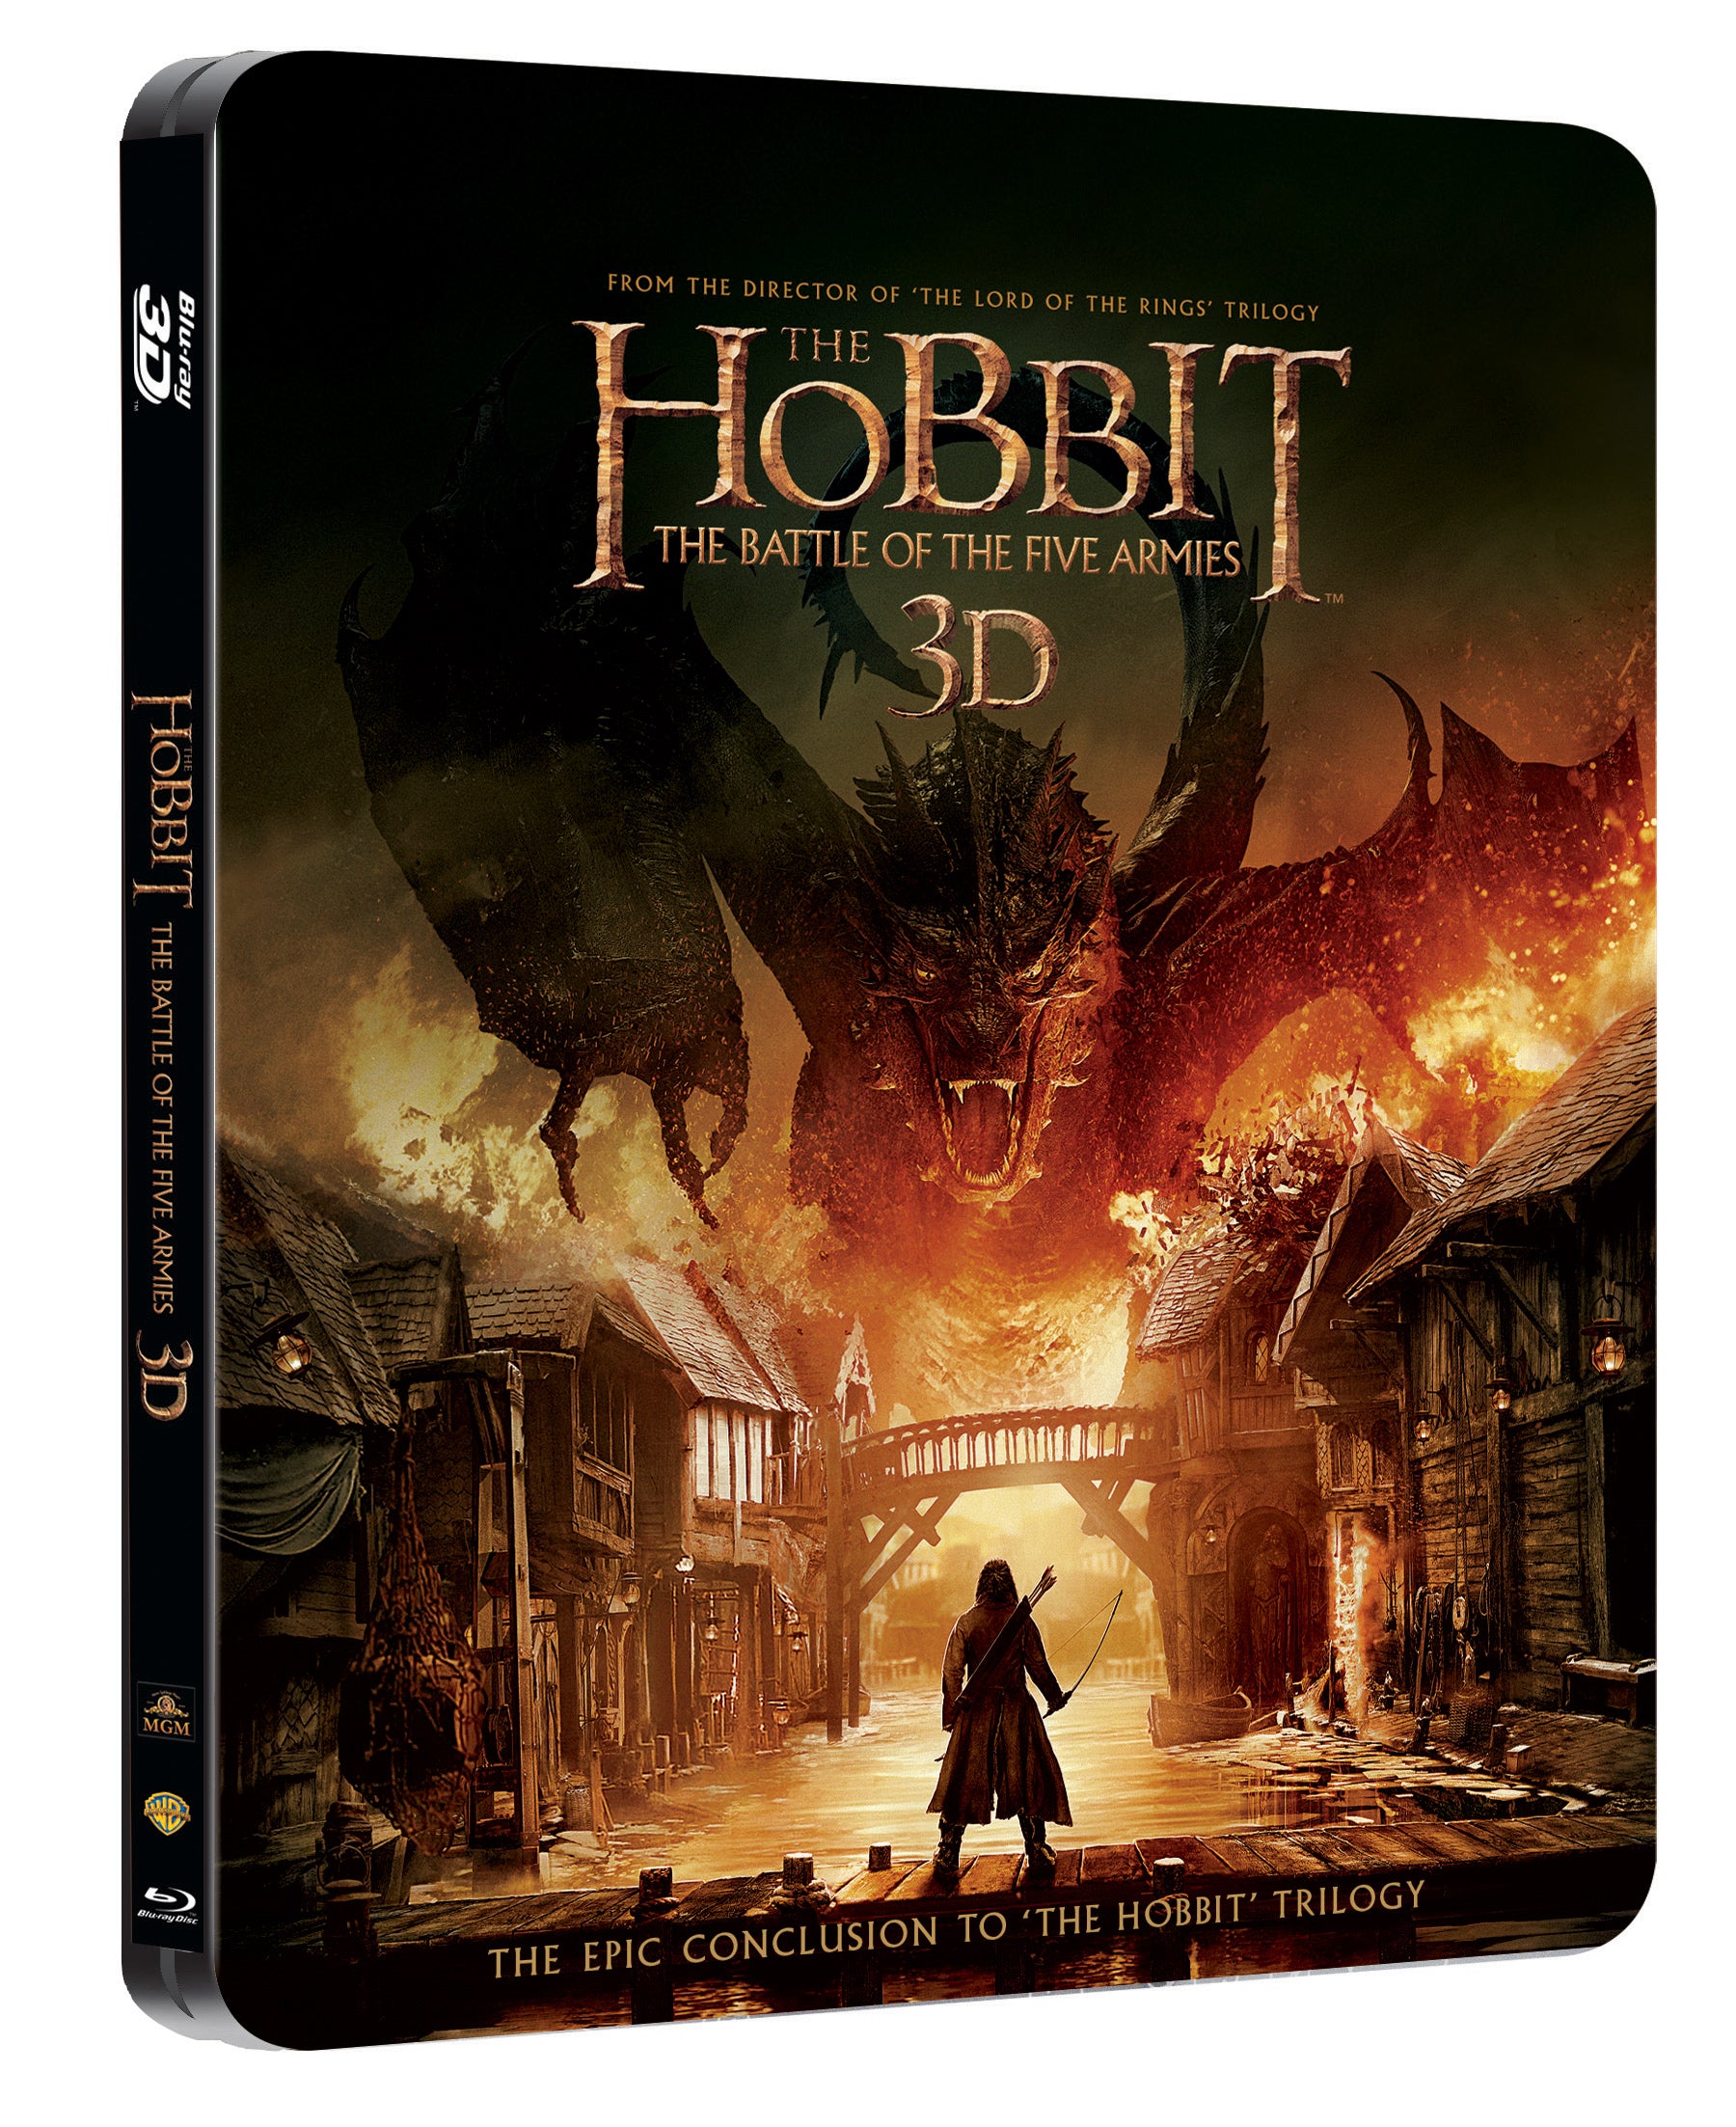 Hobit: Bitva peti armad 4BD (3D+2D) - steelbook / The Hobbit: The Battle of the Five Armies - Czech version